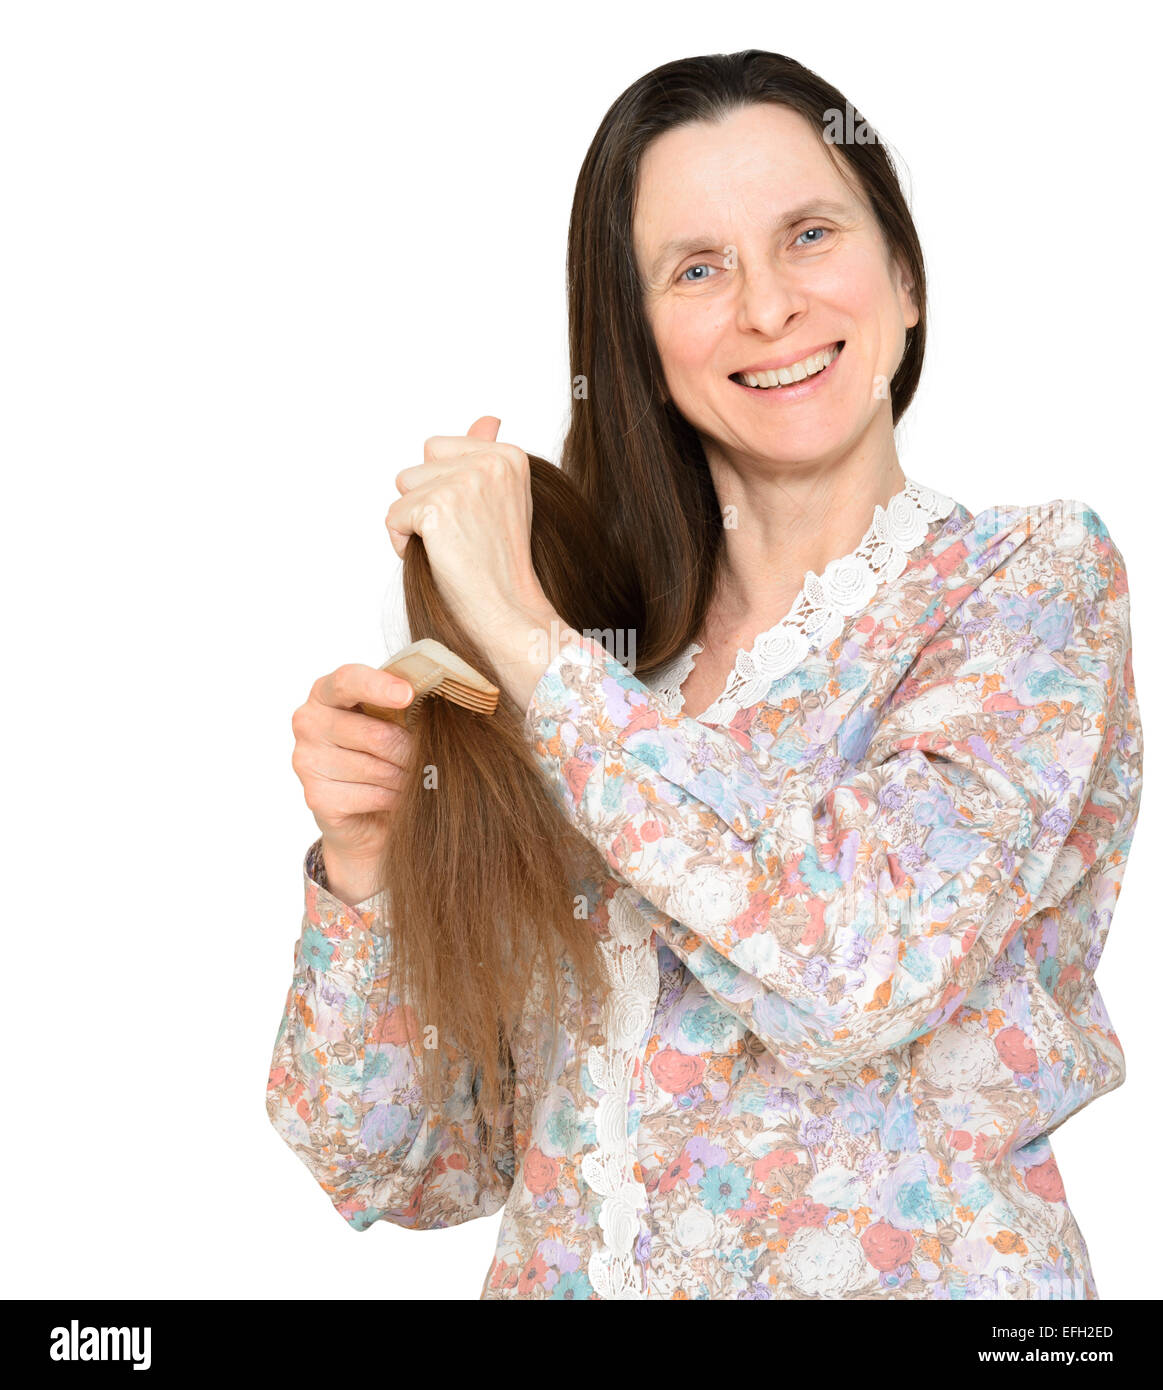 Erwachsene Frau lange braune Haare zu kämmen, mit einem hölzernen Kamm, isoliert auf weißem Hintergrund Stockfoto